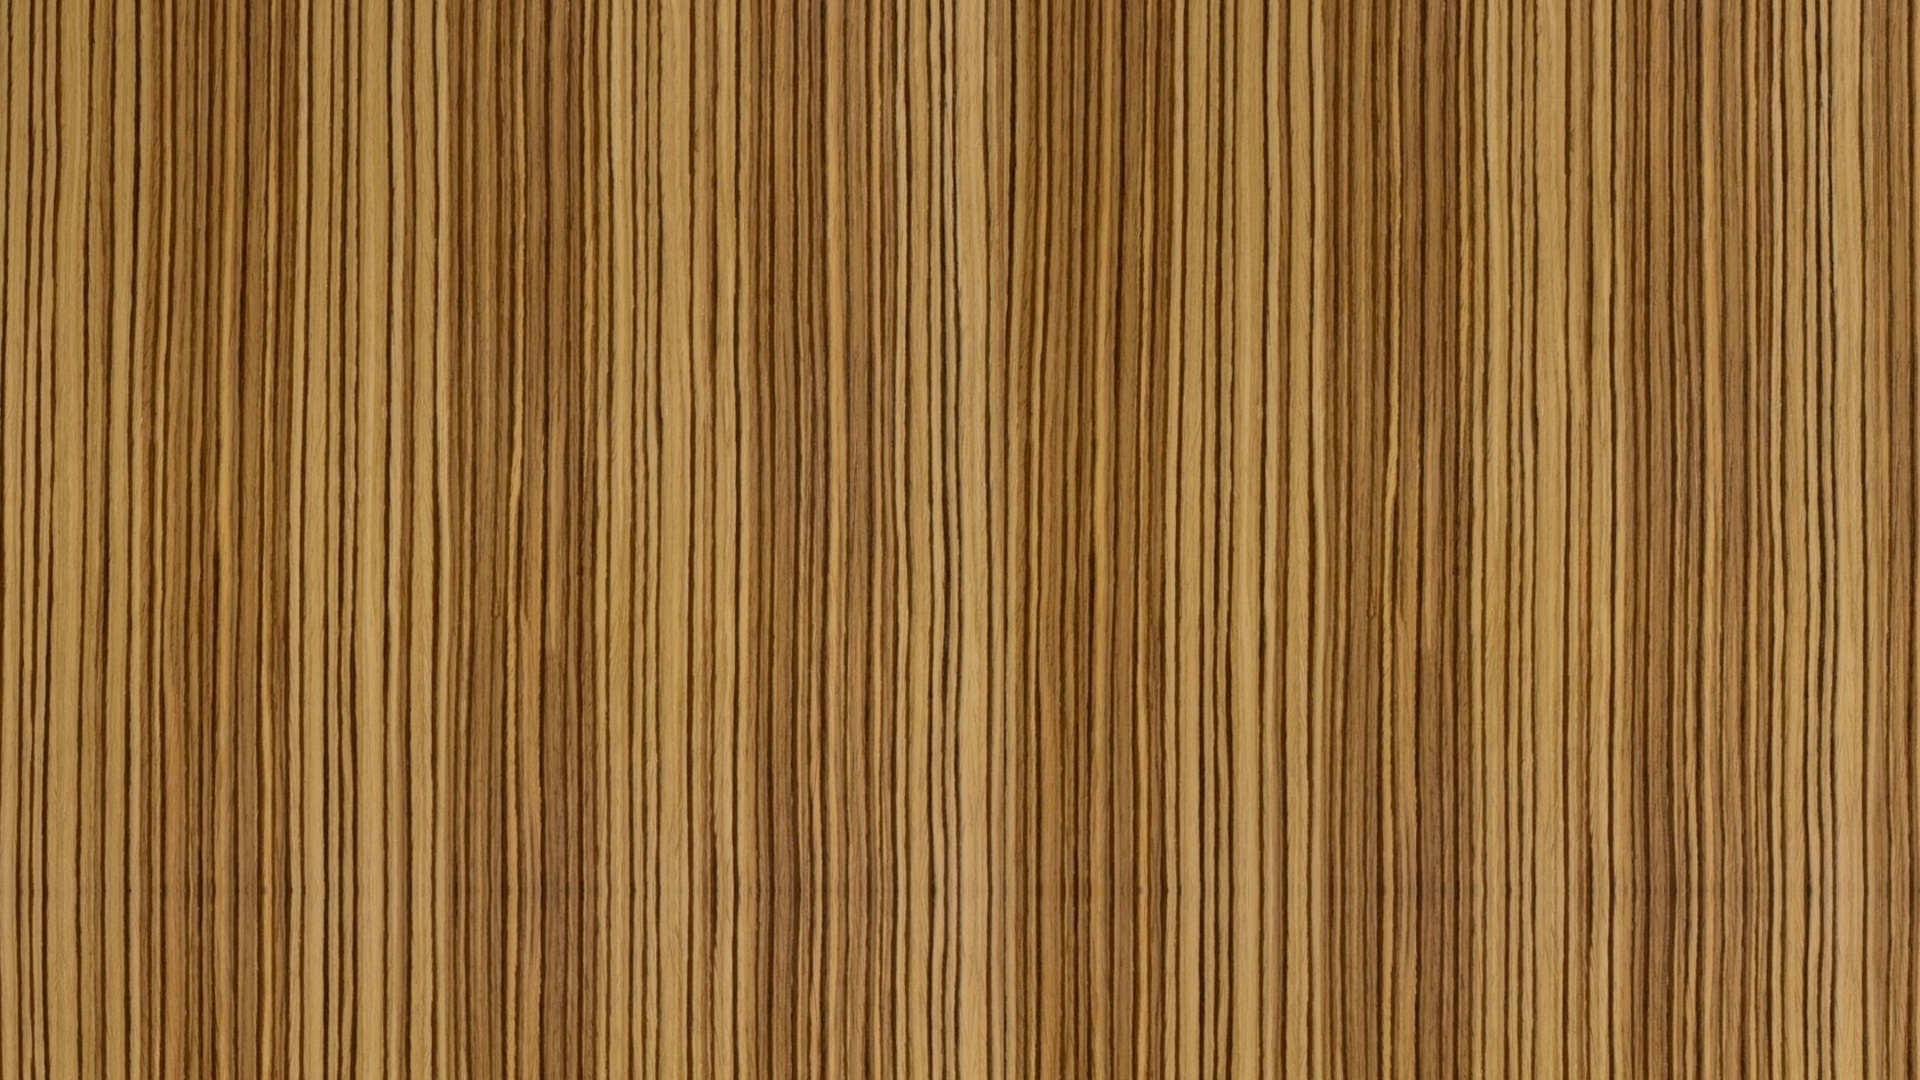 Wood Computer Wallpapers, Desktop Backgrounds 1920x1080 ID413267